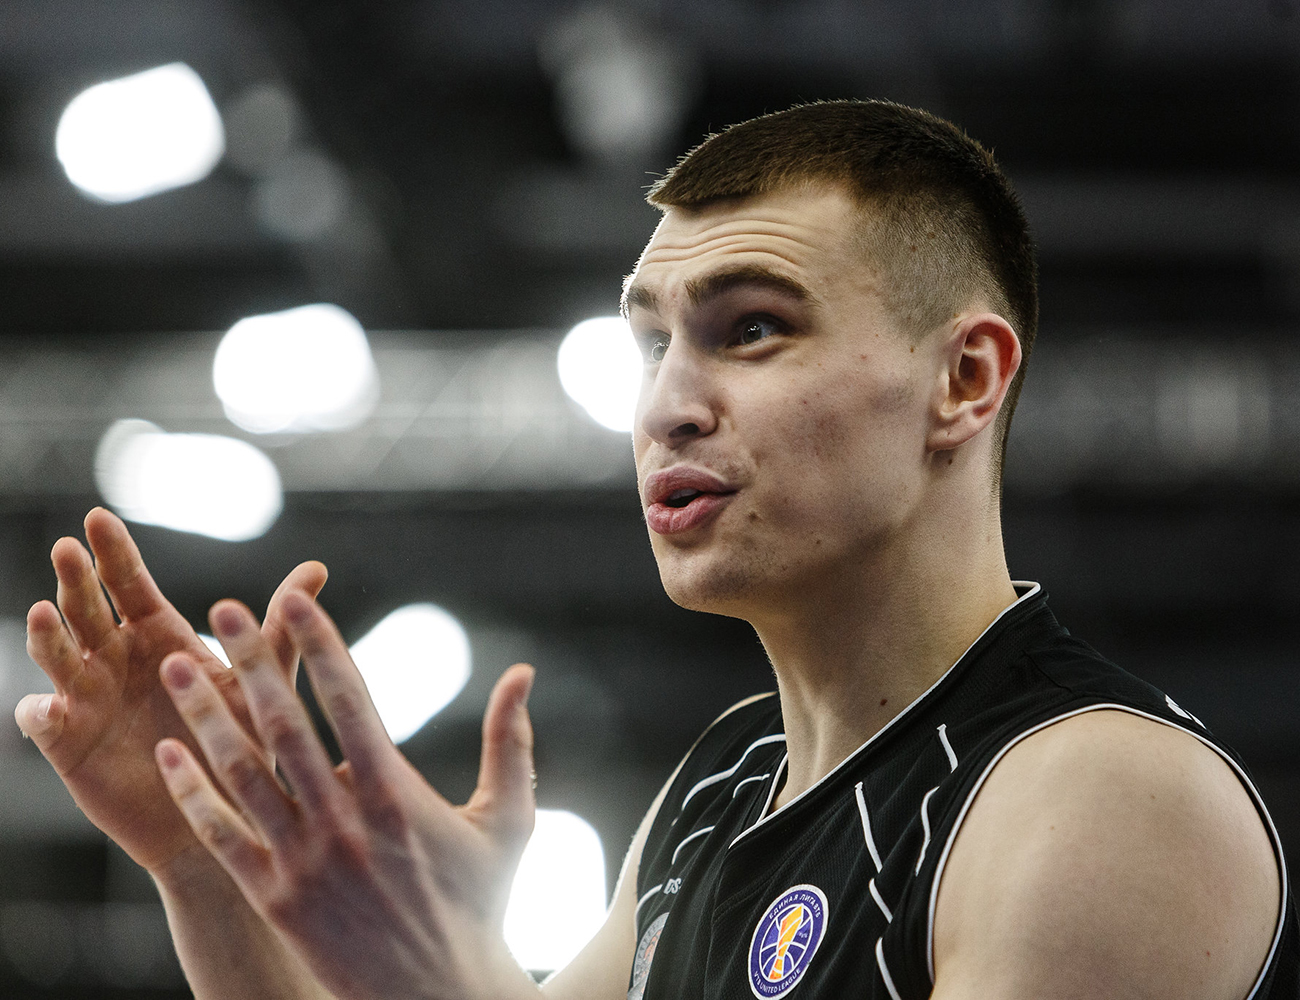 Антон Квитковских: «Желание стать профессиональным баскетболистом сформировалось ближе к 18 годам»